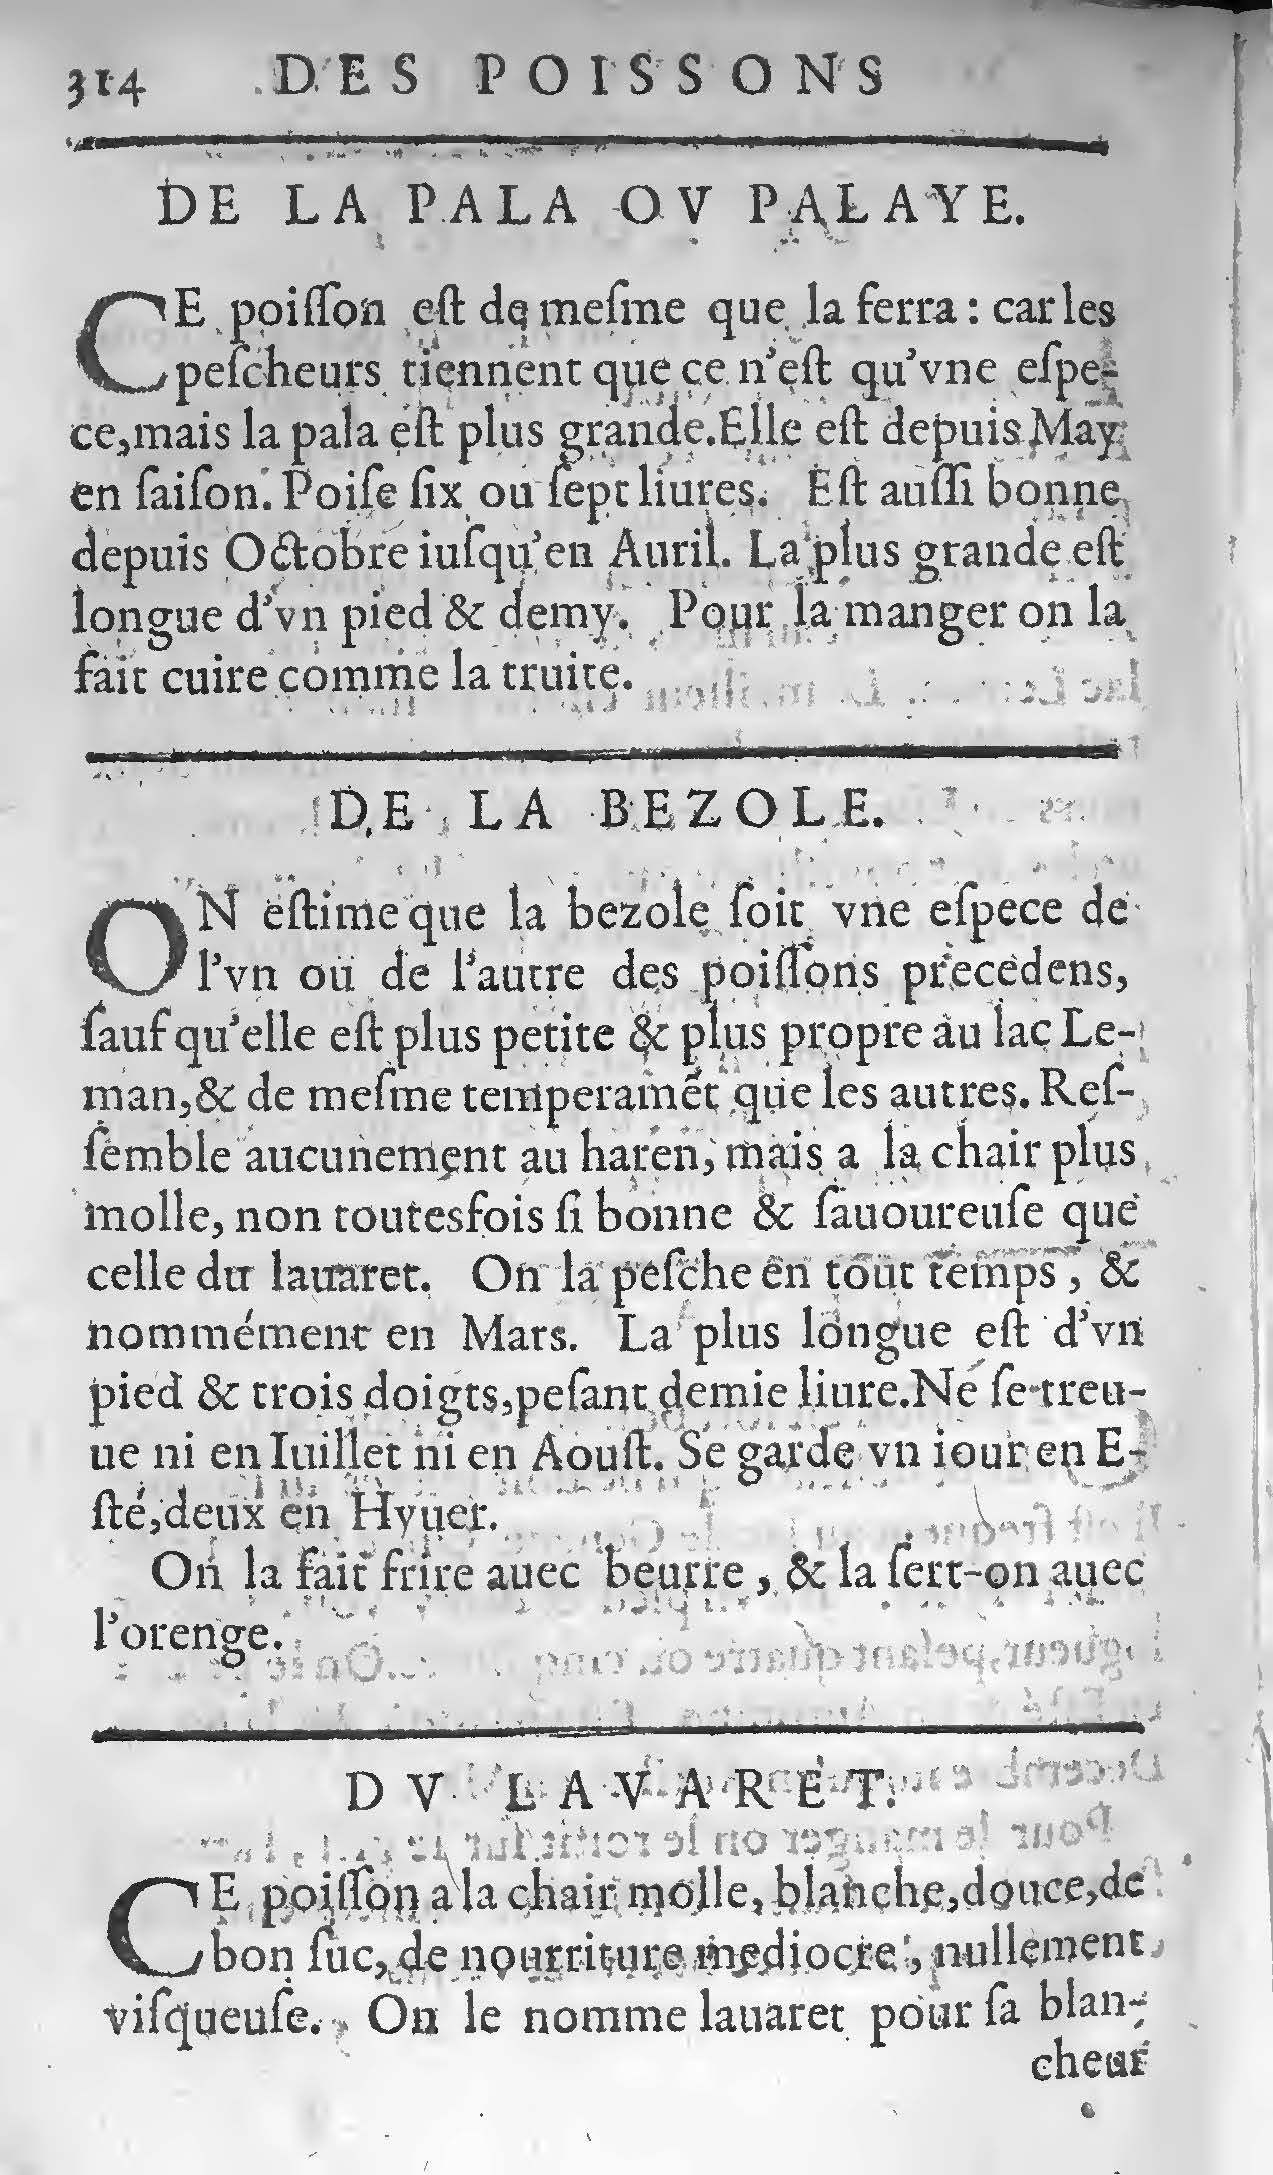 1607 Étienne Servain et Jean Antoine Huguetan - Trésor de santé ou ménage de la vie humaine - BIU Santé_Page_334.jpg